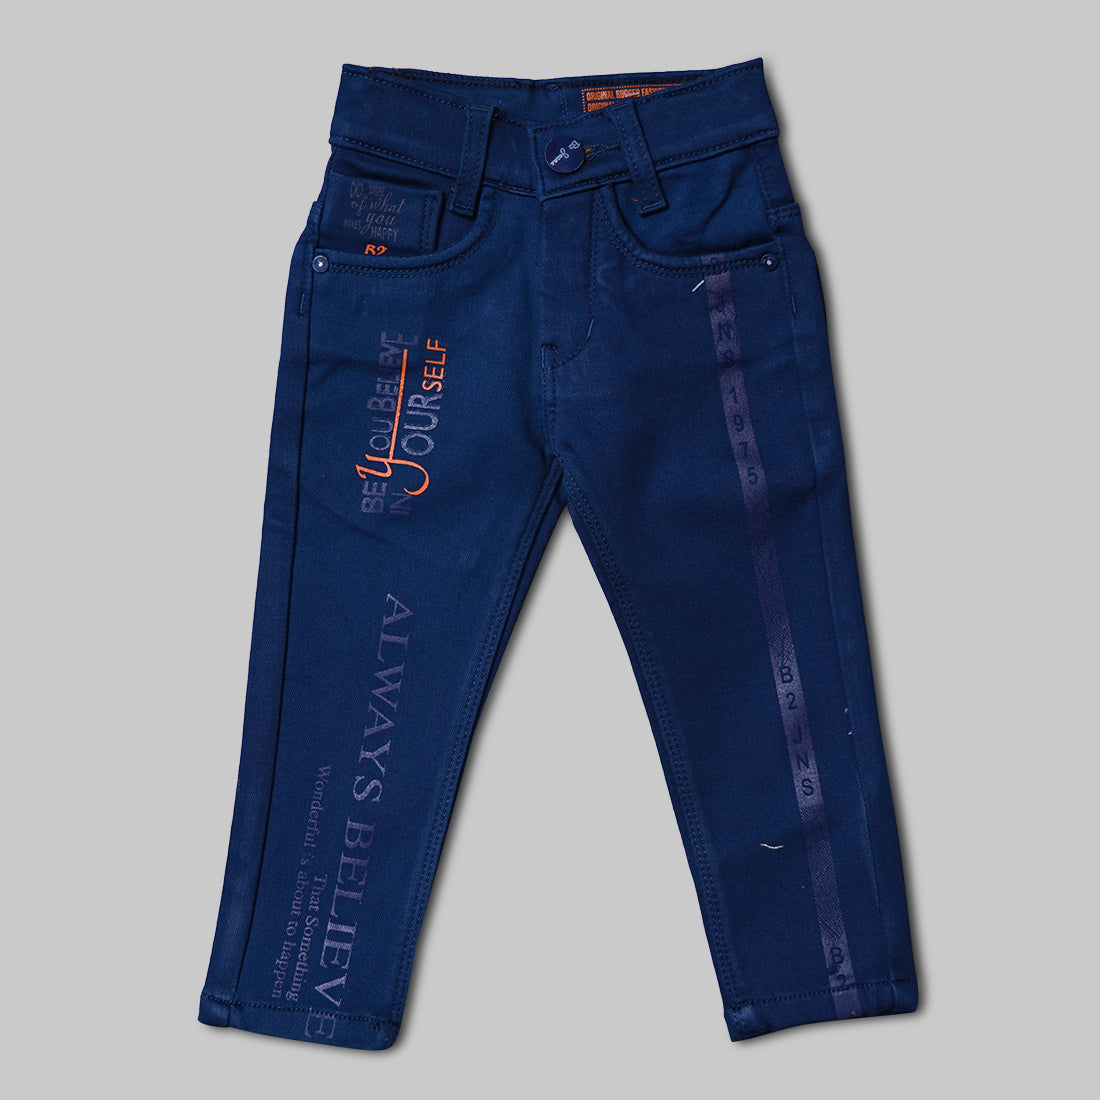 custom boys jeans 8 years shorts| Alibaba.com